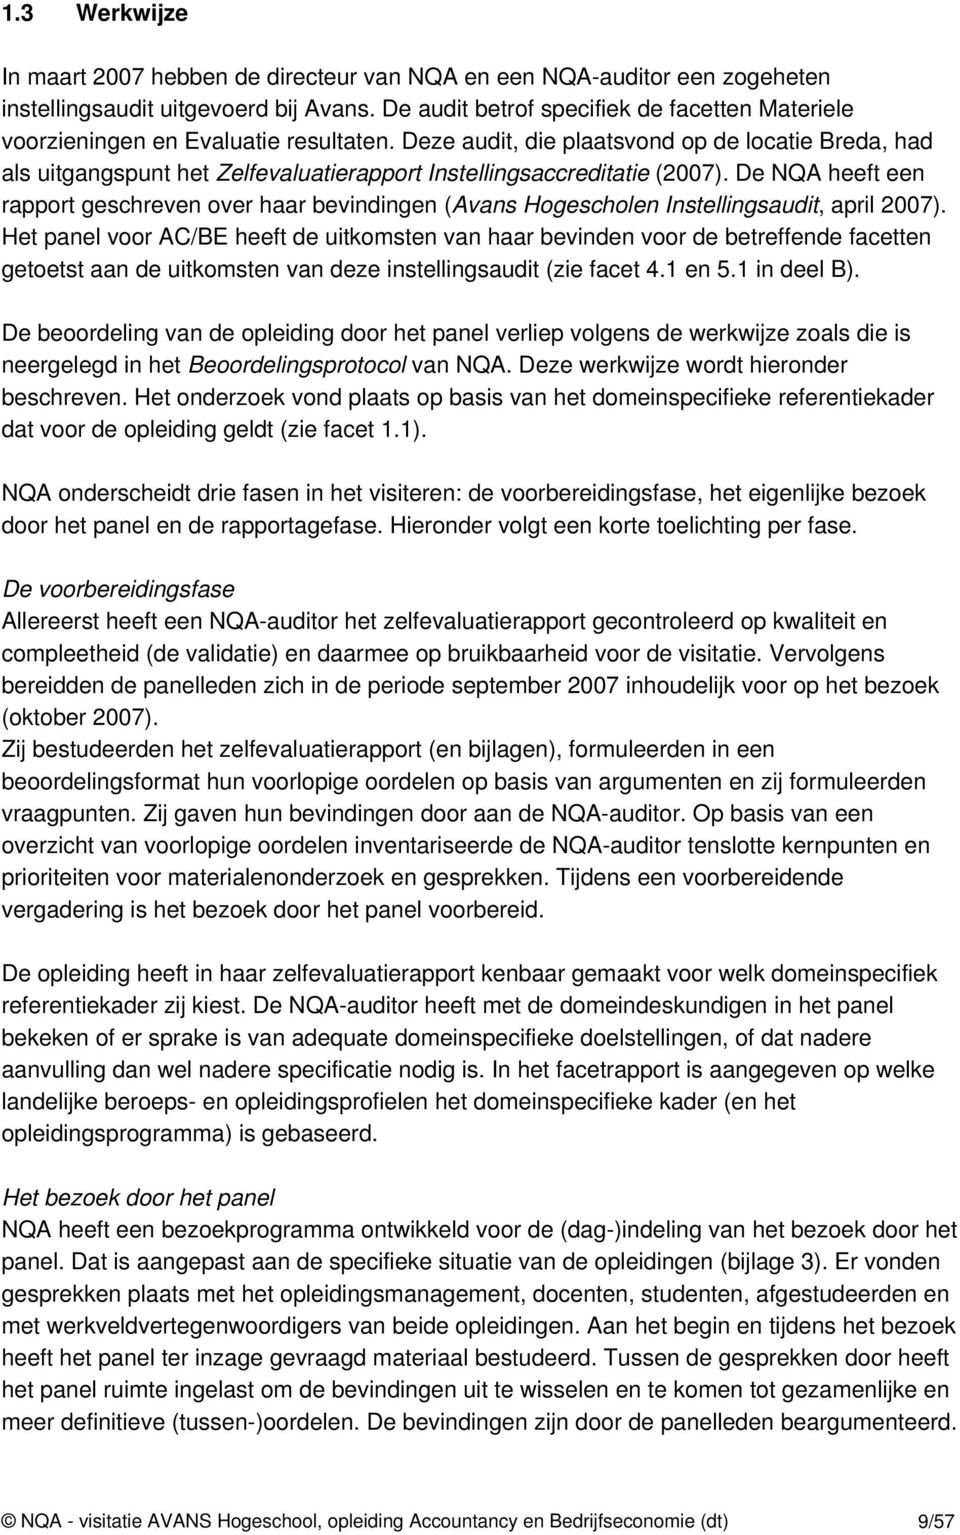 Deze audit, die plaatsvond op de locatie Breda, had als uitgangspunt het Zelfevaluatierapport Instellingsaccreditatie (2007).